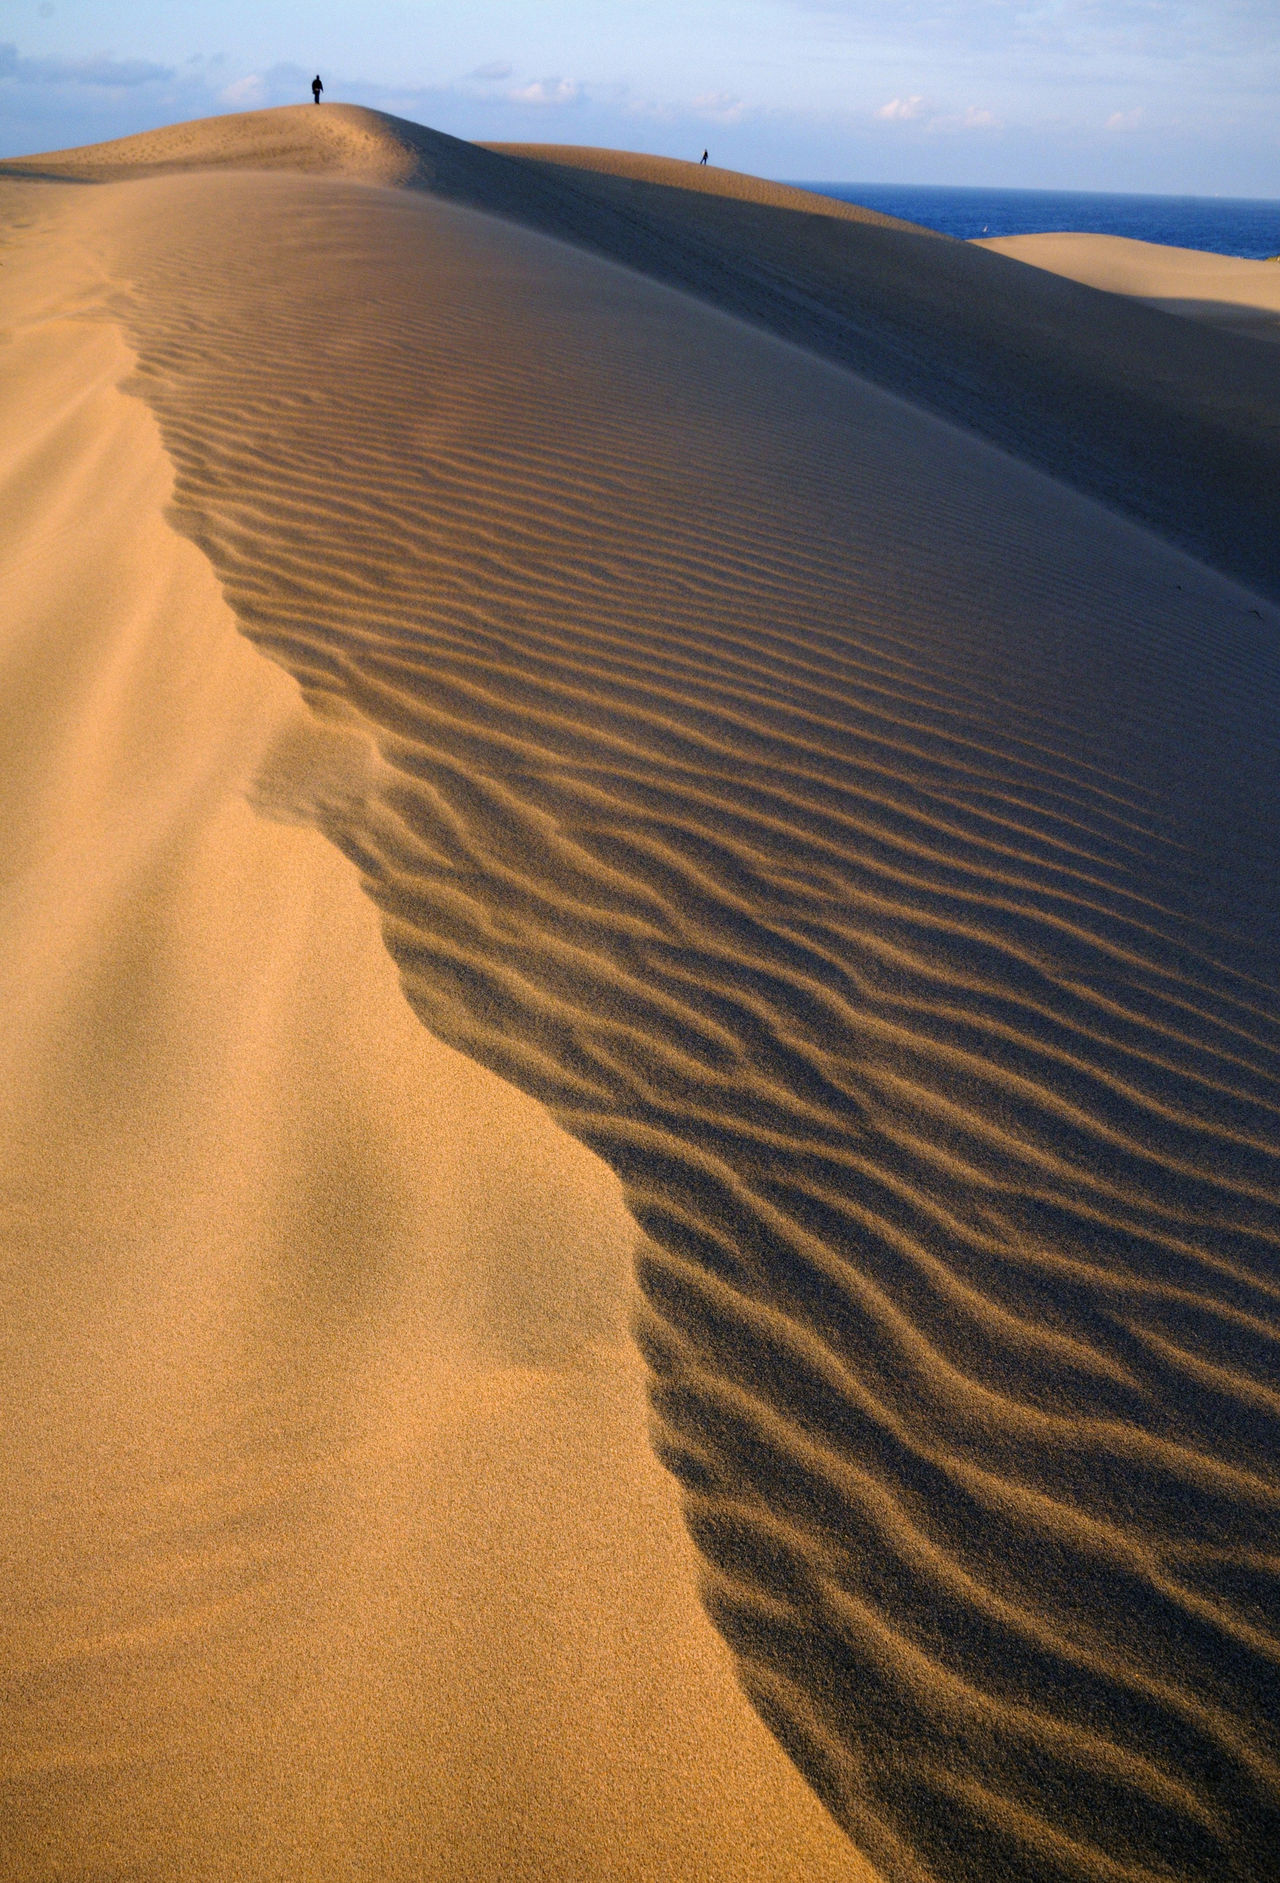 風と砂が織りなす神秘的な光景 鳥取砂丘 鳥取の自然 景観 1 Nippon Com